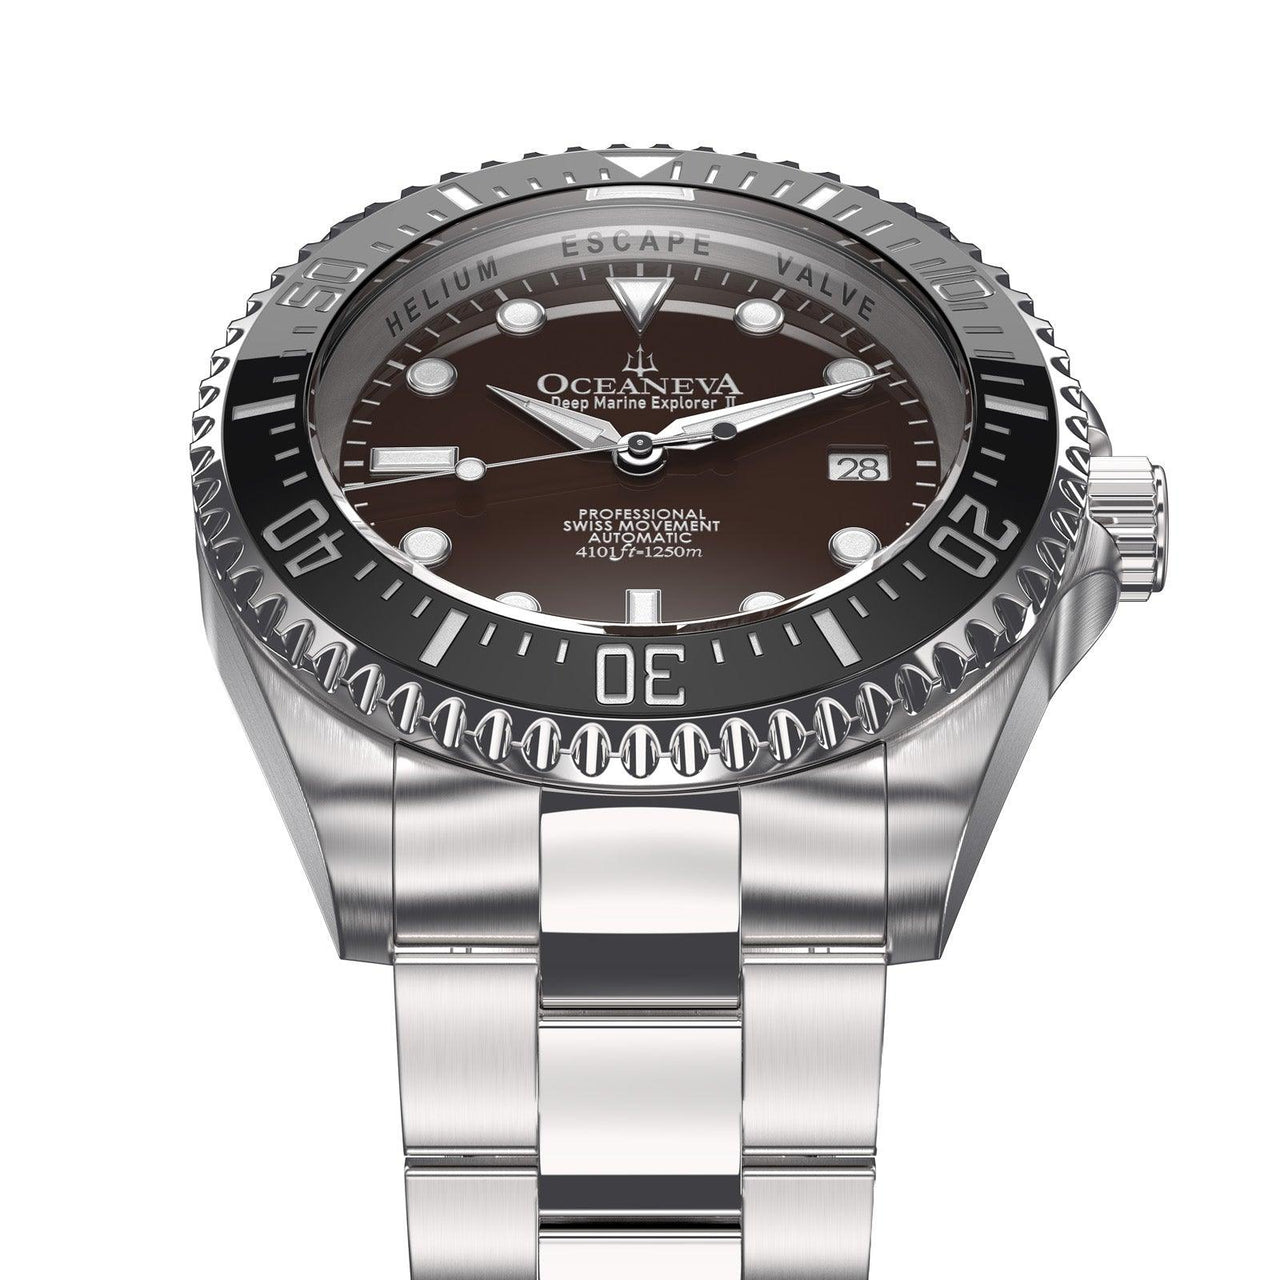 Invicta 22050 - Pro Diver Professional Watch •